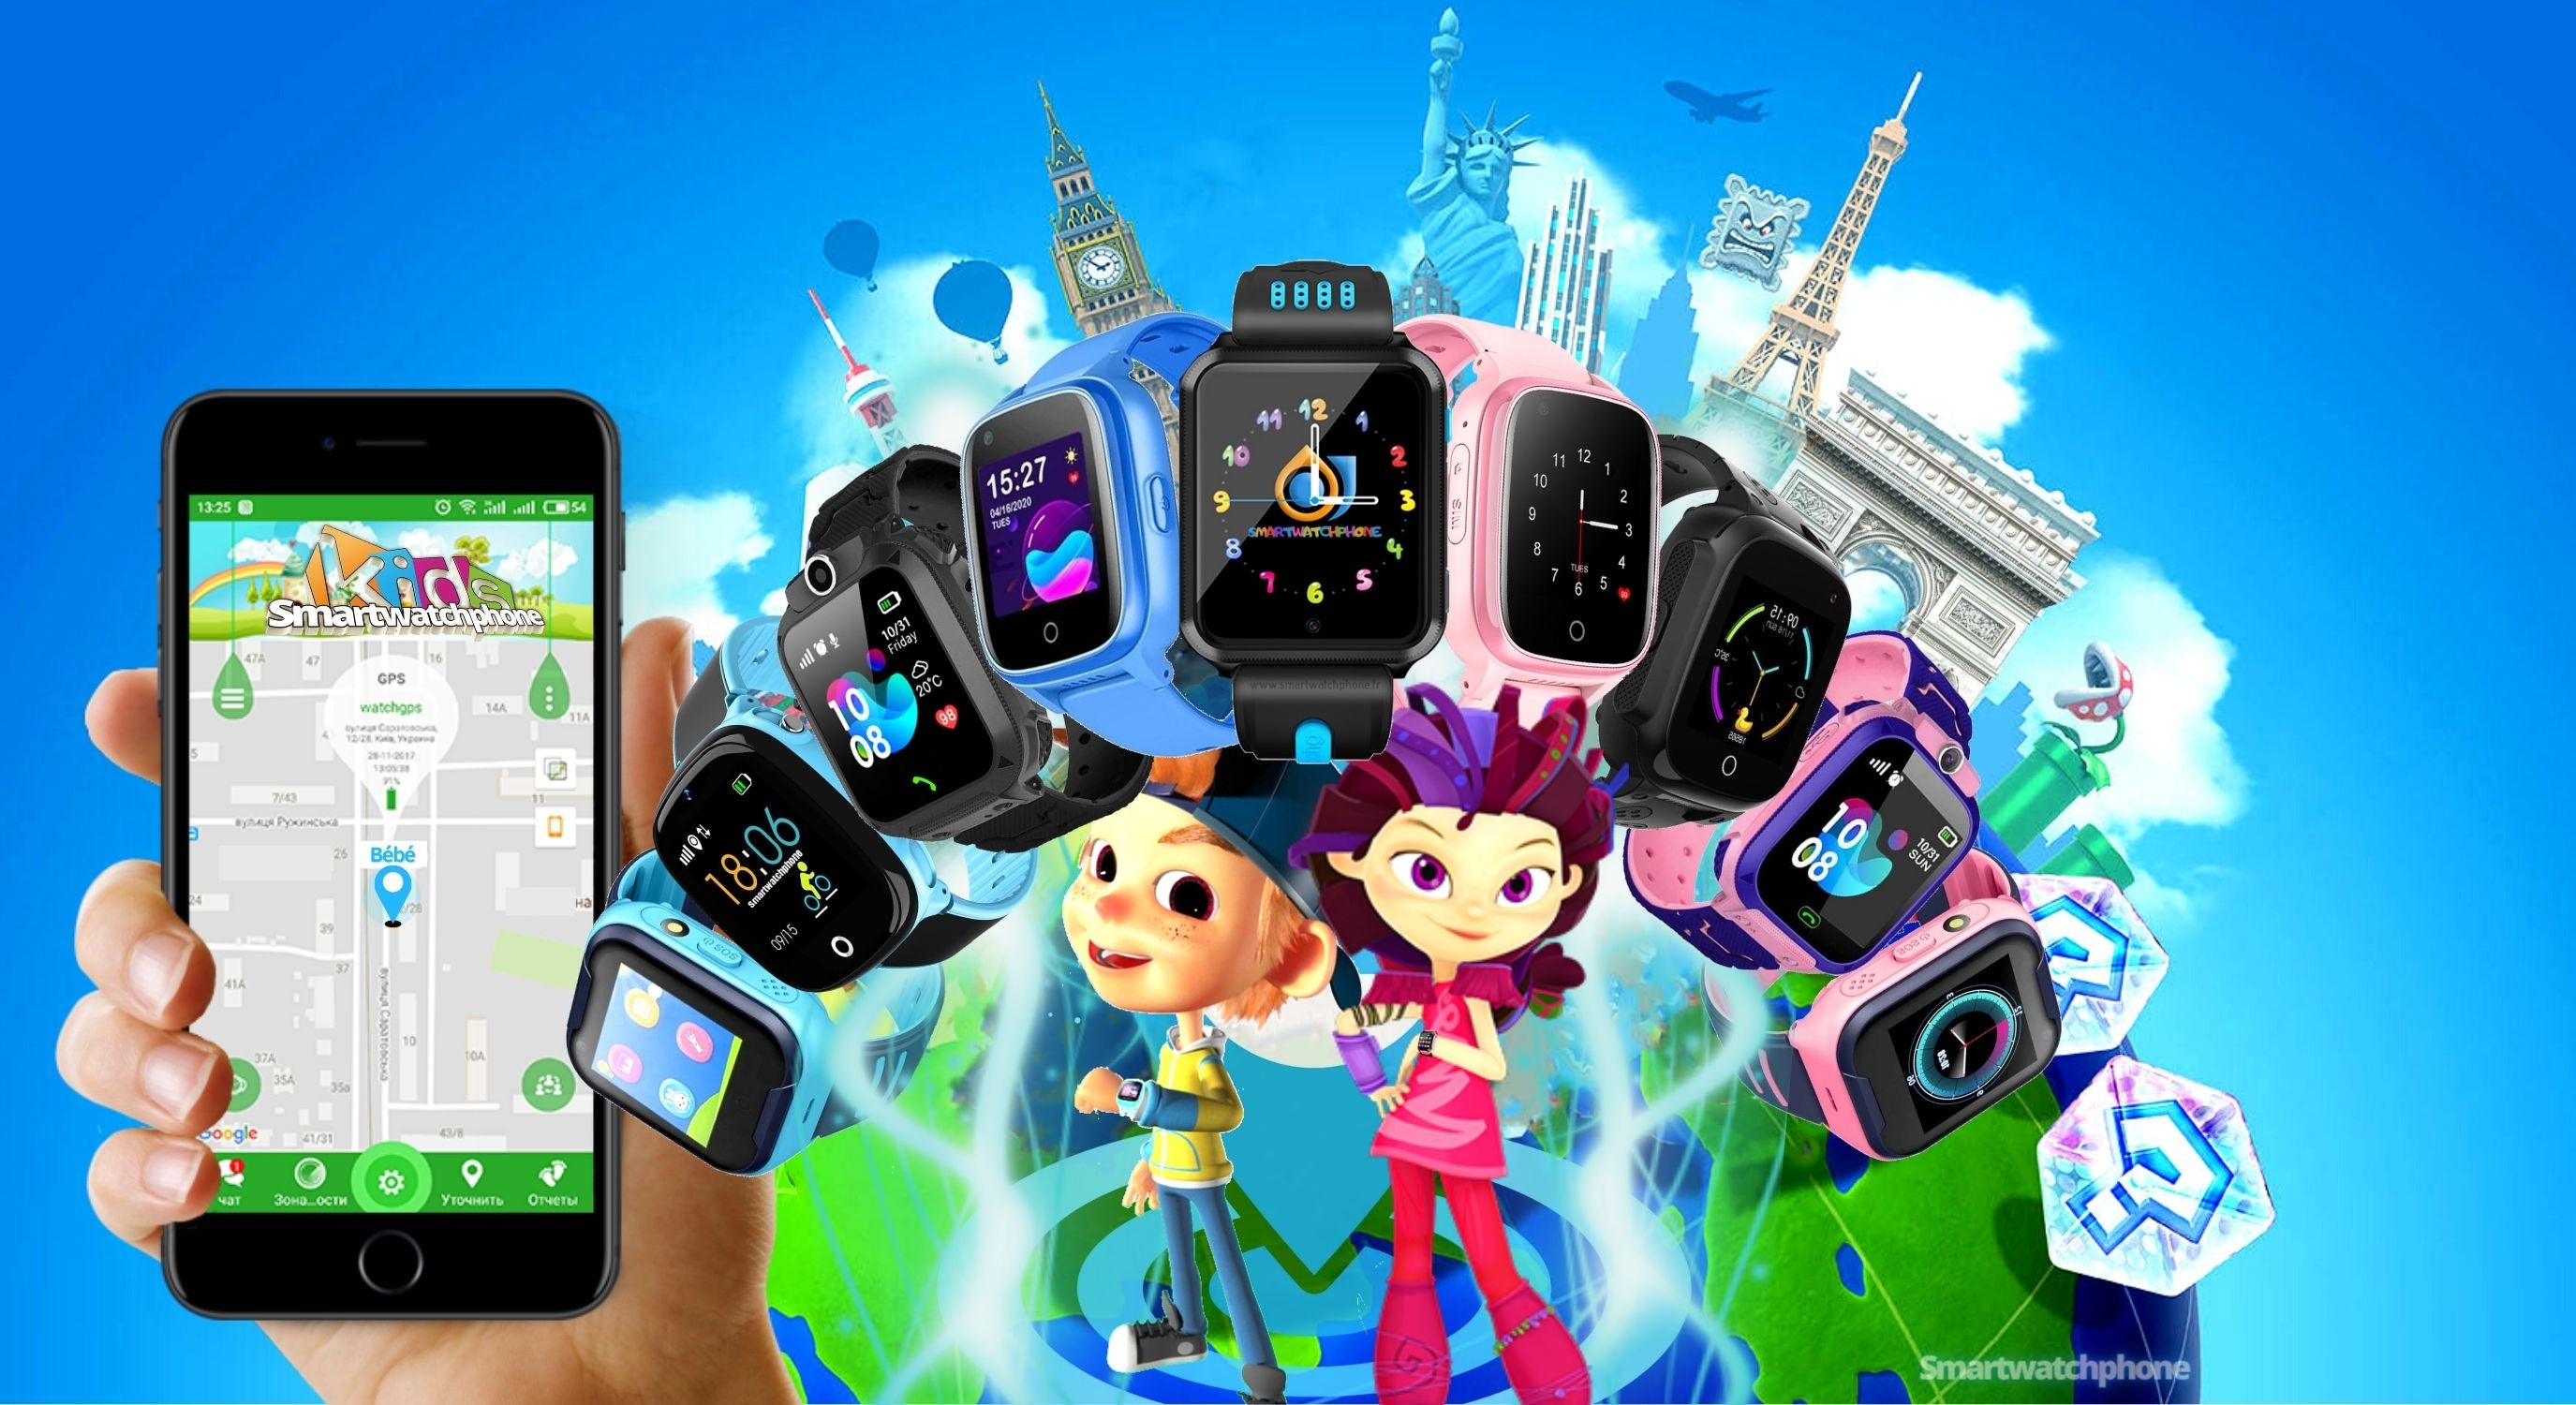 Smartwatchphone kids